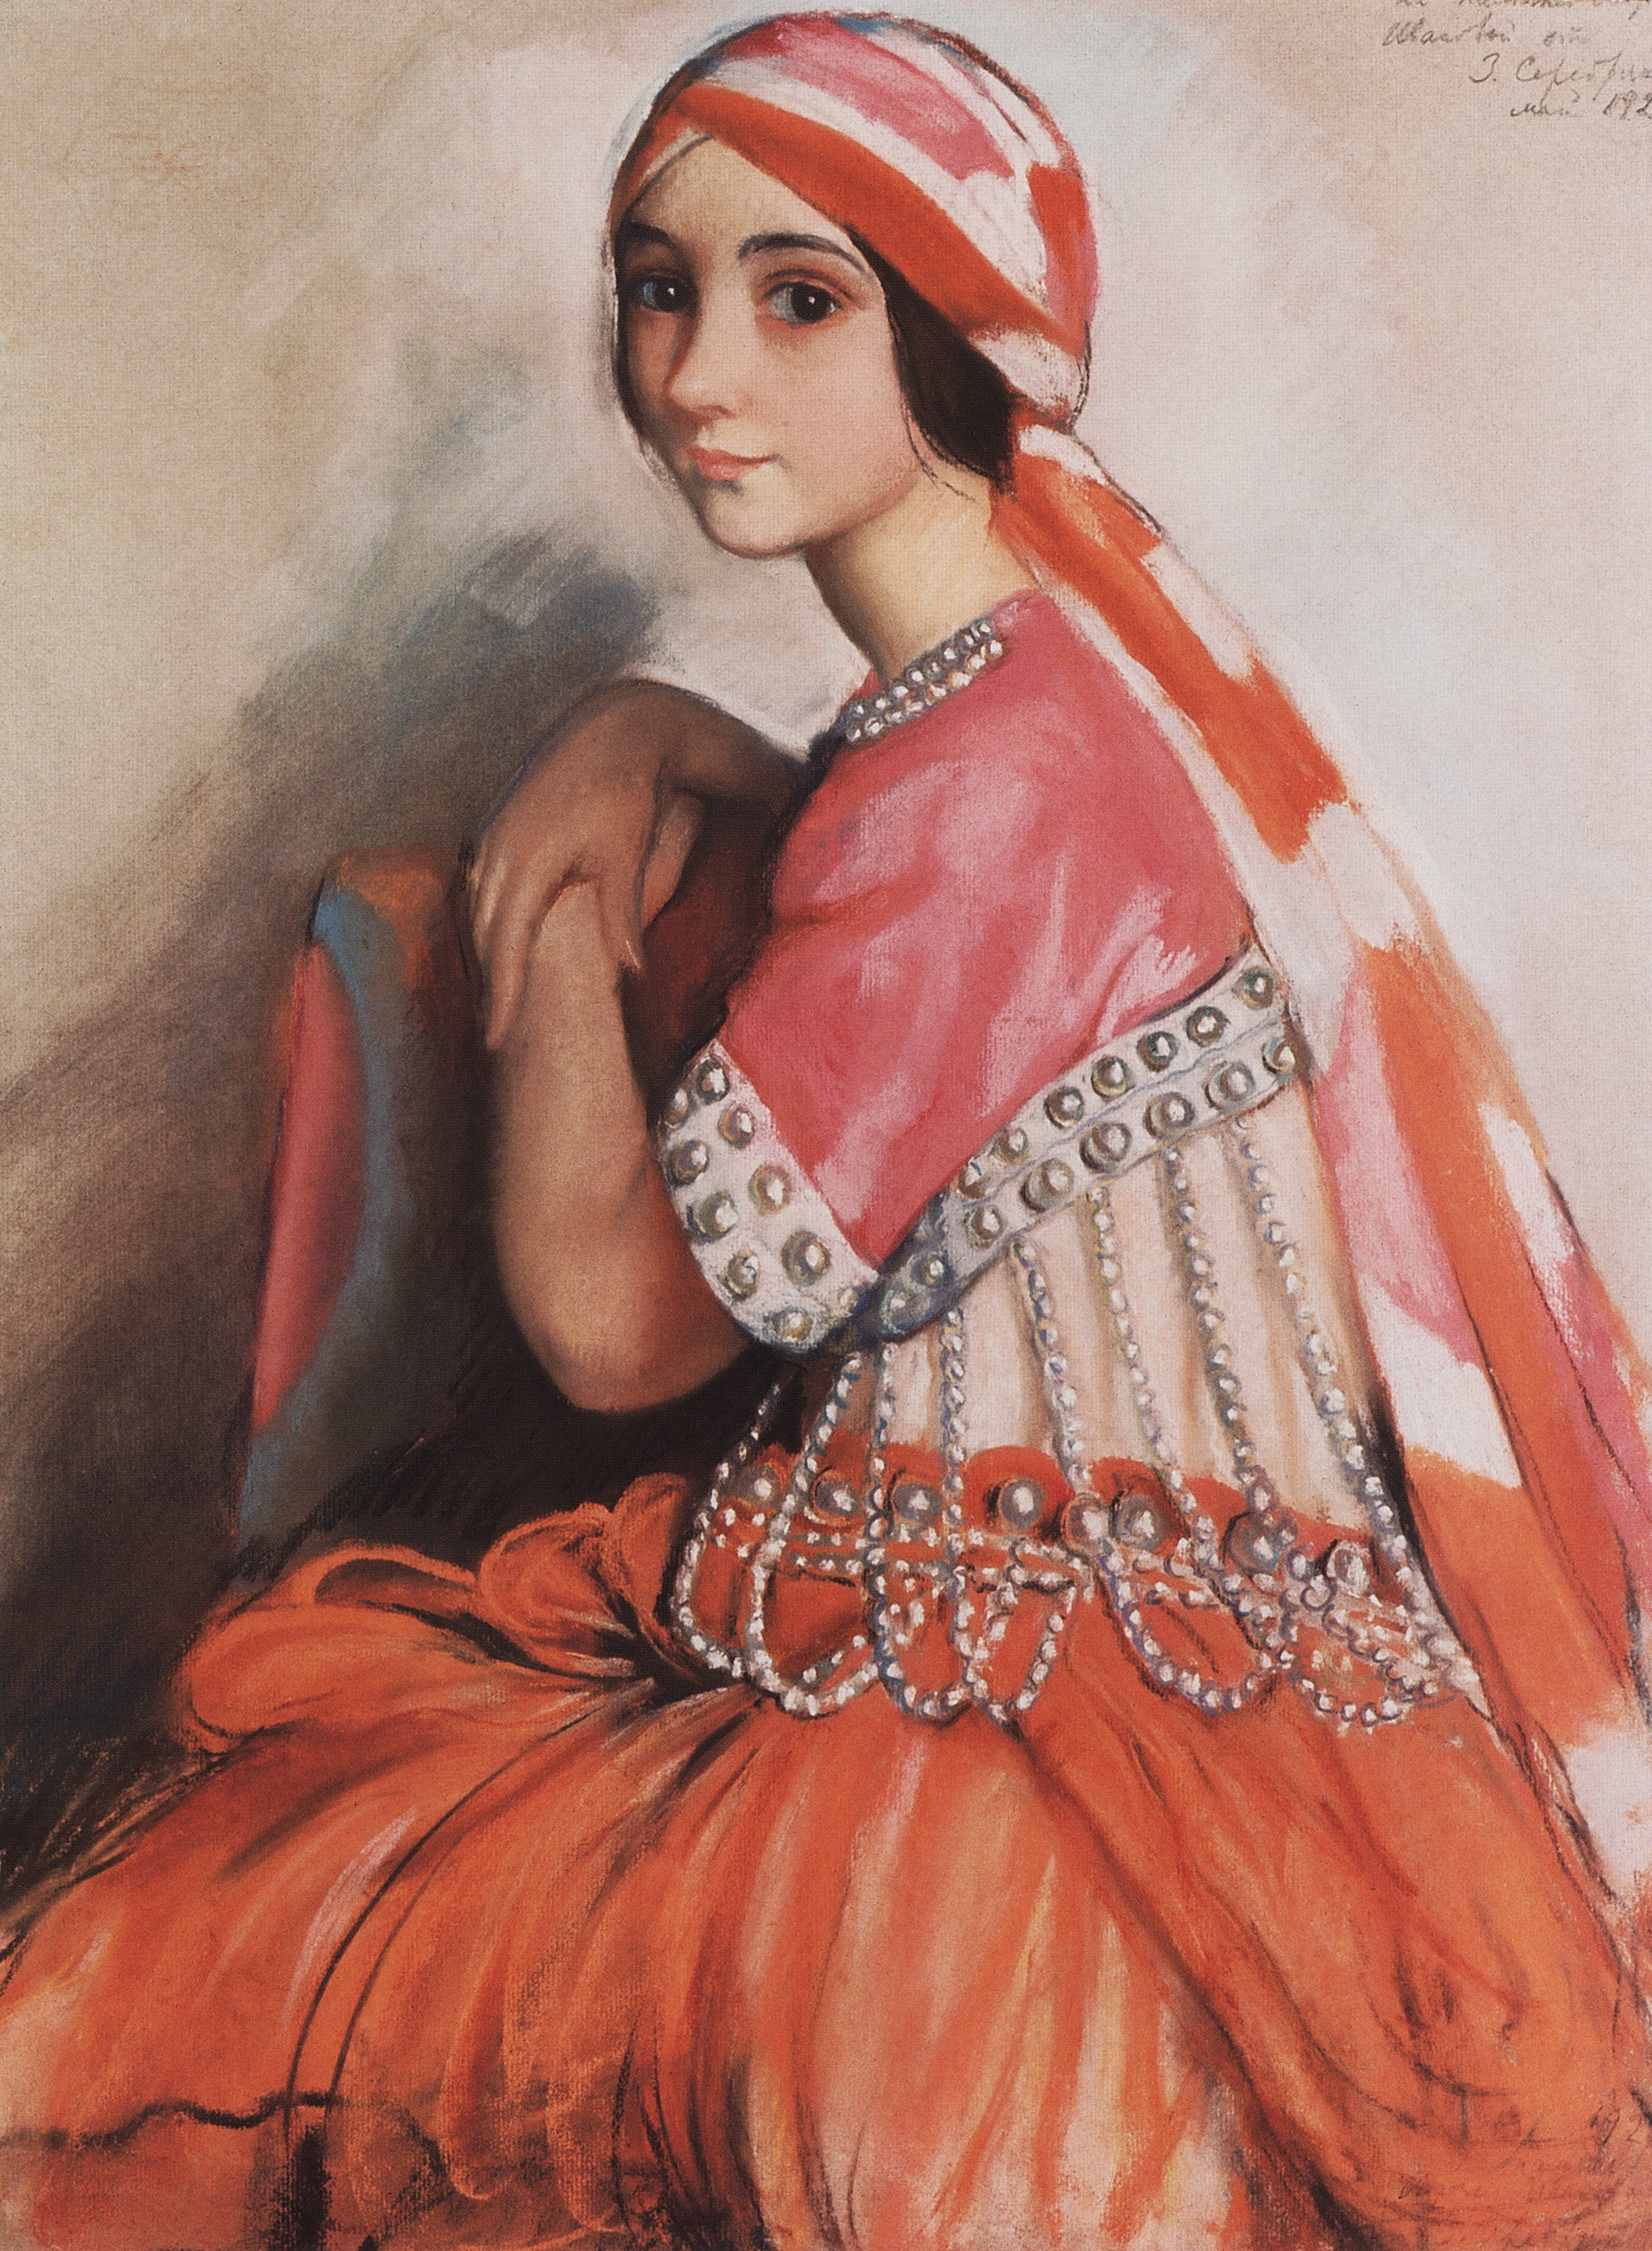 Retrato da bailarina Lidia Ivanova by Zinaida Serebryakova - 1922 